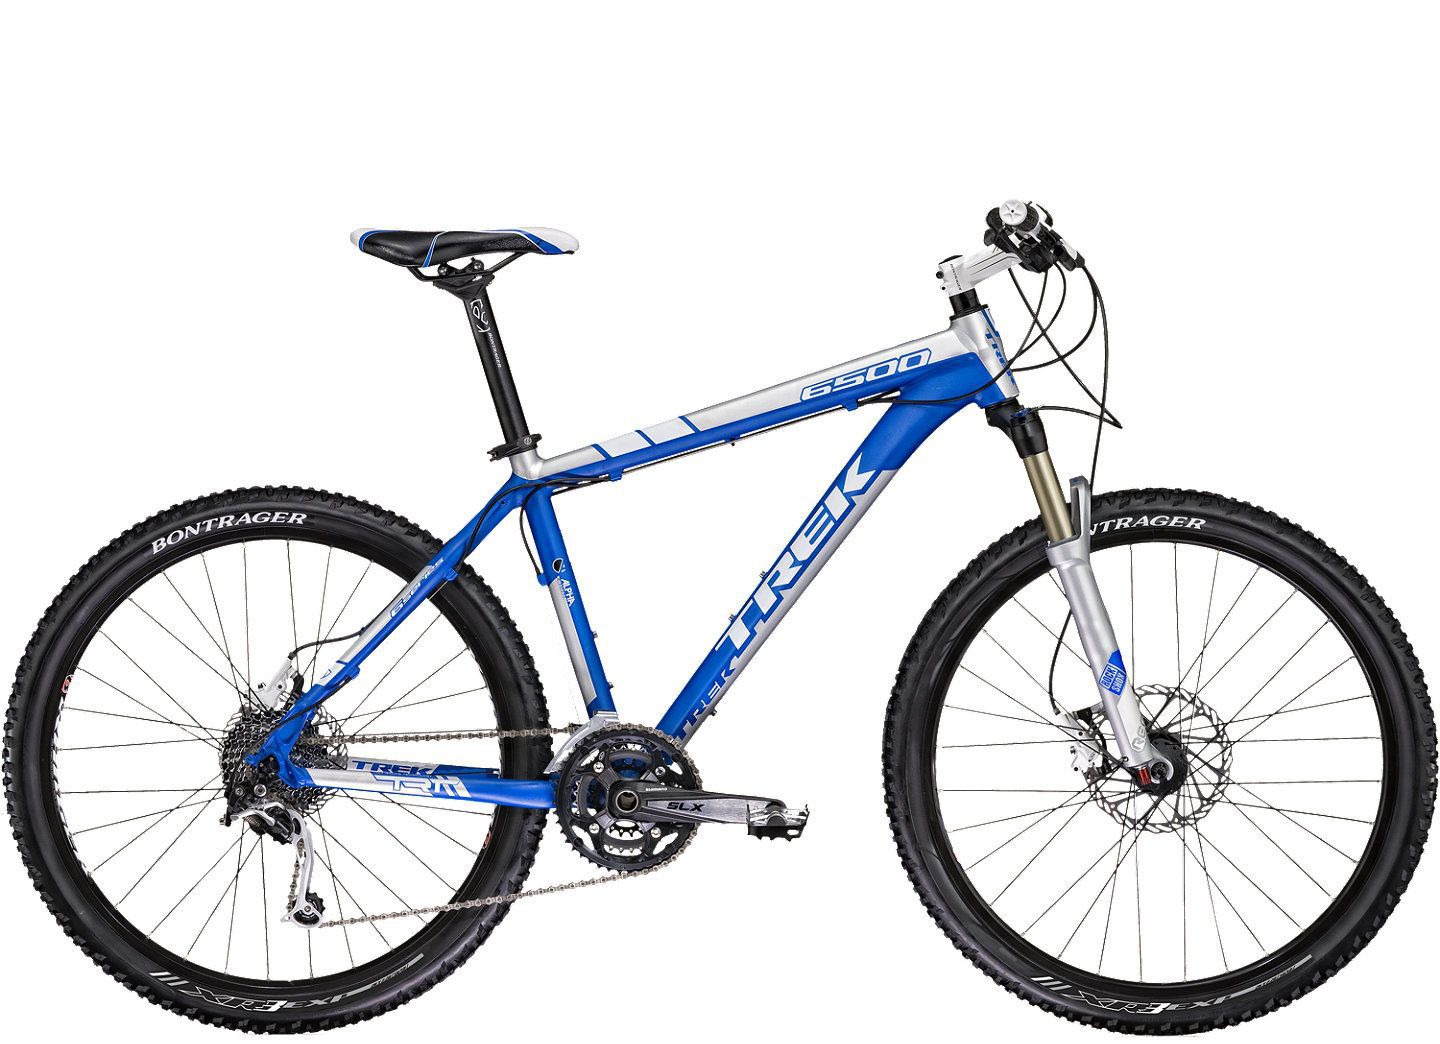 2011 Trek 6500 - Bicycle Details 